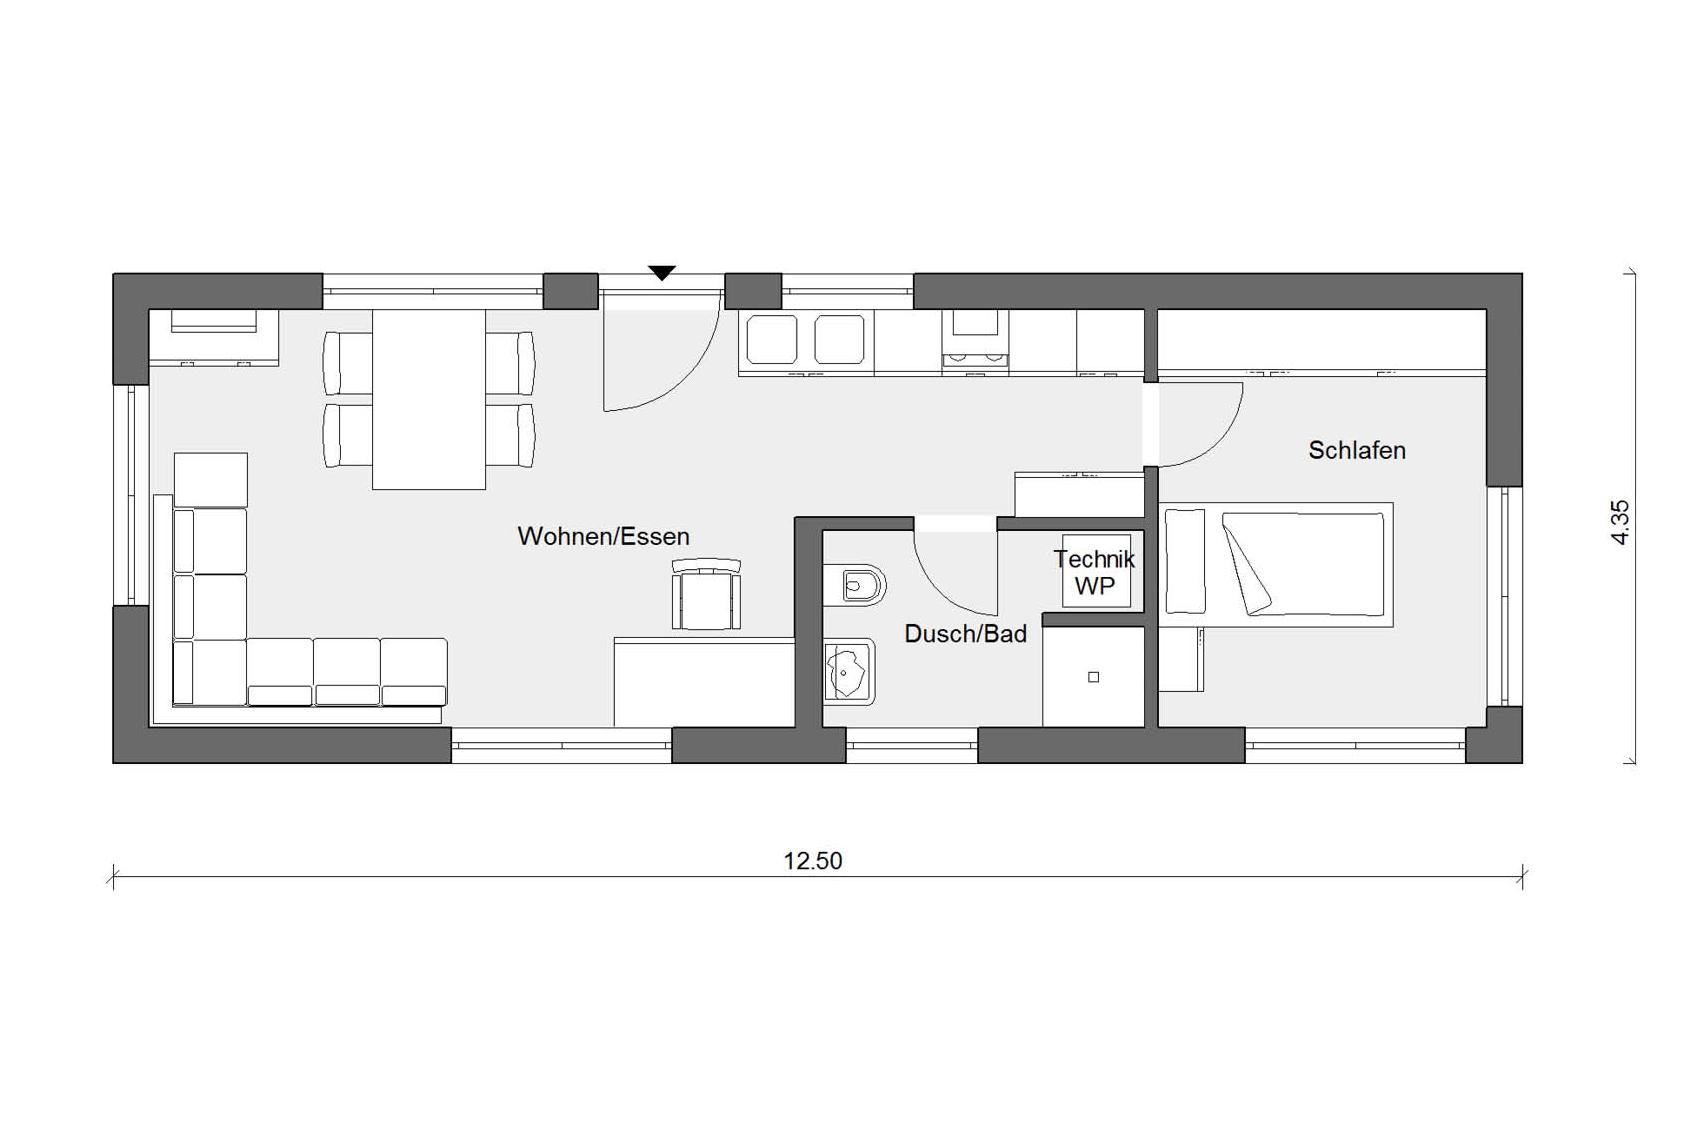 Ground floor floor plan mobile living module for singles F 10-043.12